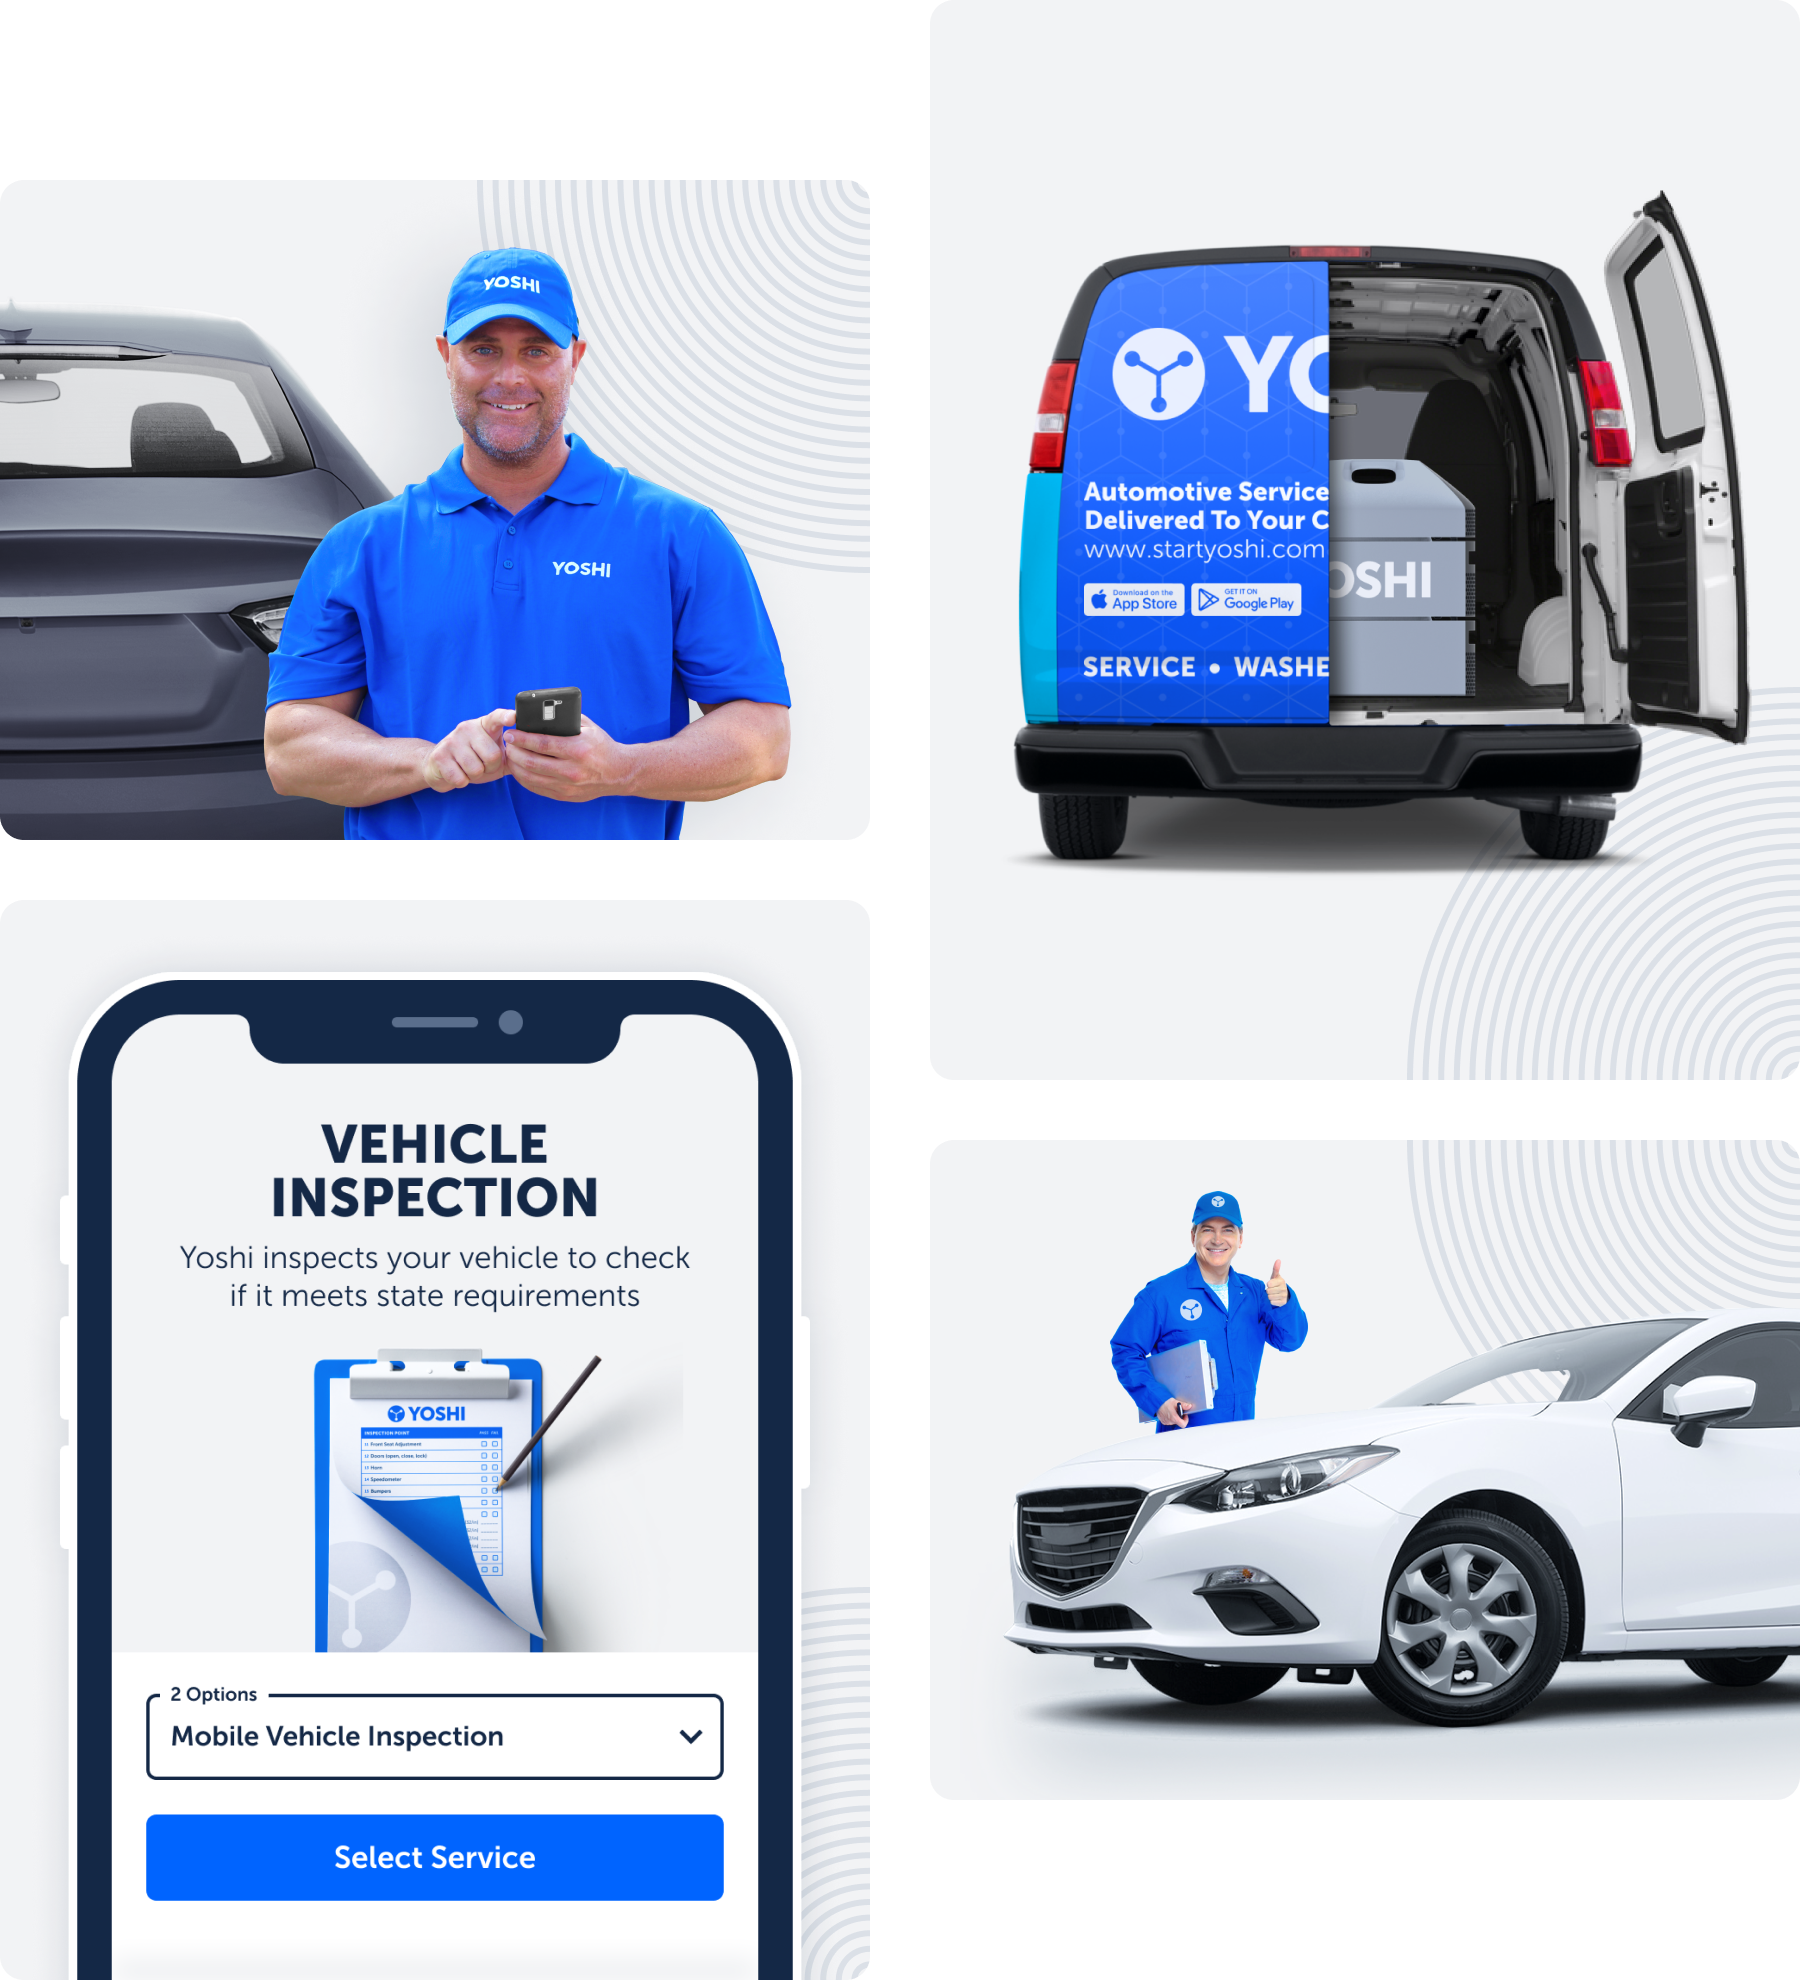 Yoshi vehicle inspection